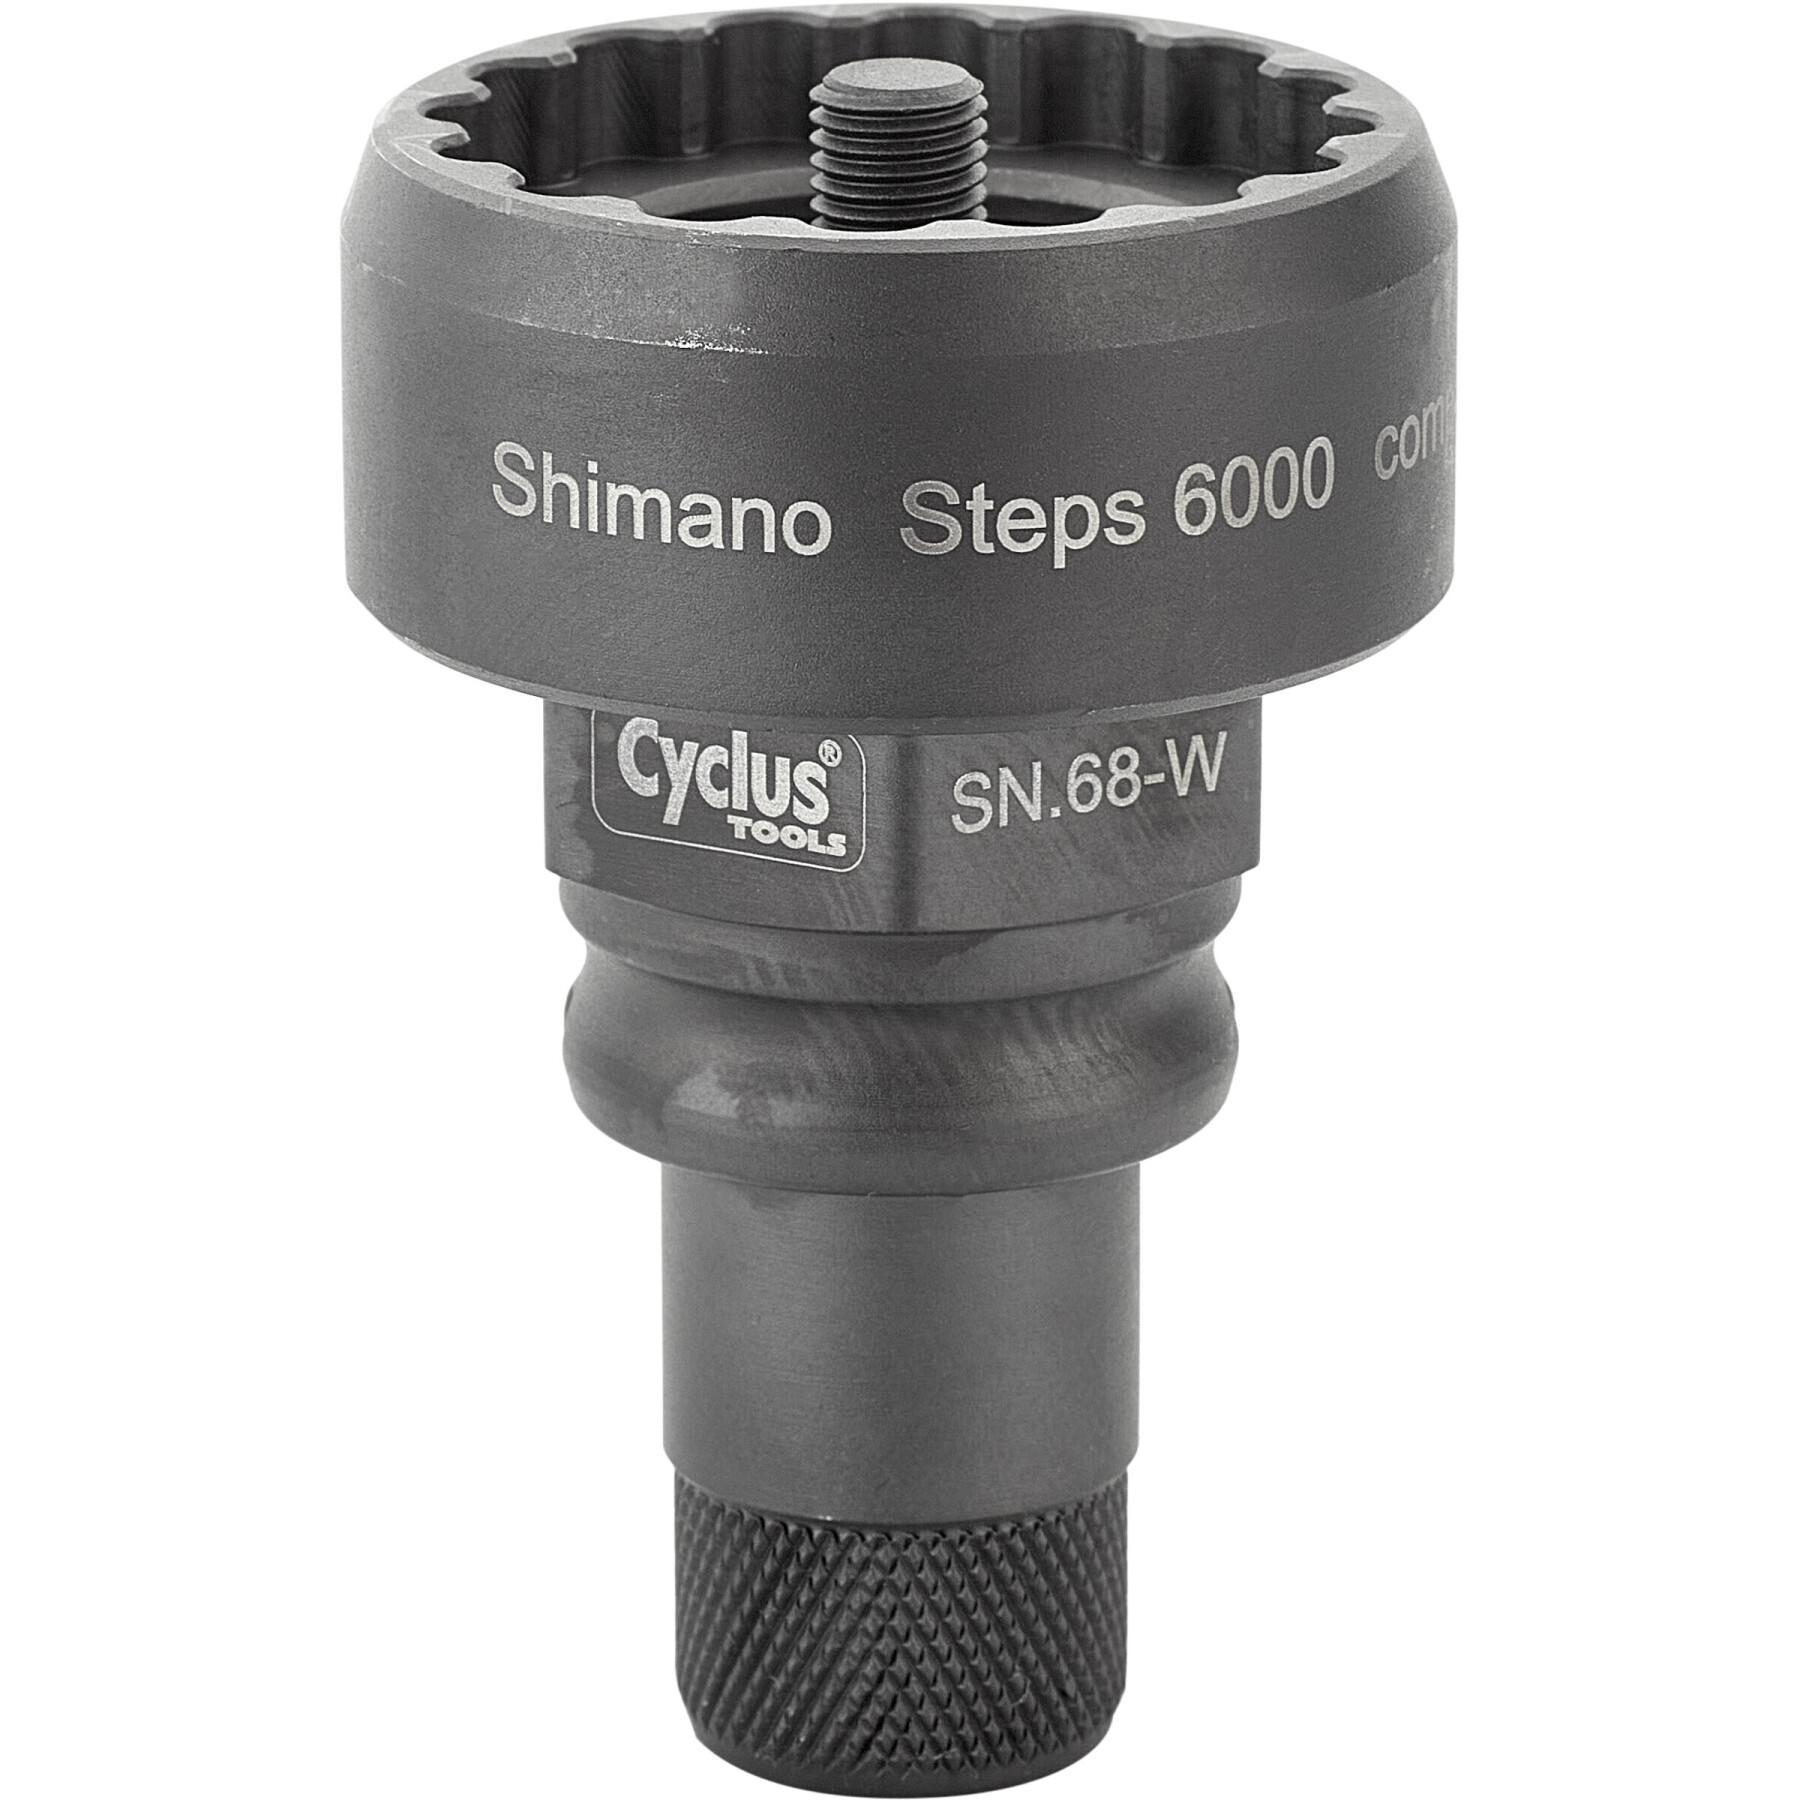 Ferramenta pro porca desmontável Cyclus pour vae shimano steps 6000 compatible avec l'outil snap.in 179967 ou clé 32mm